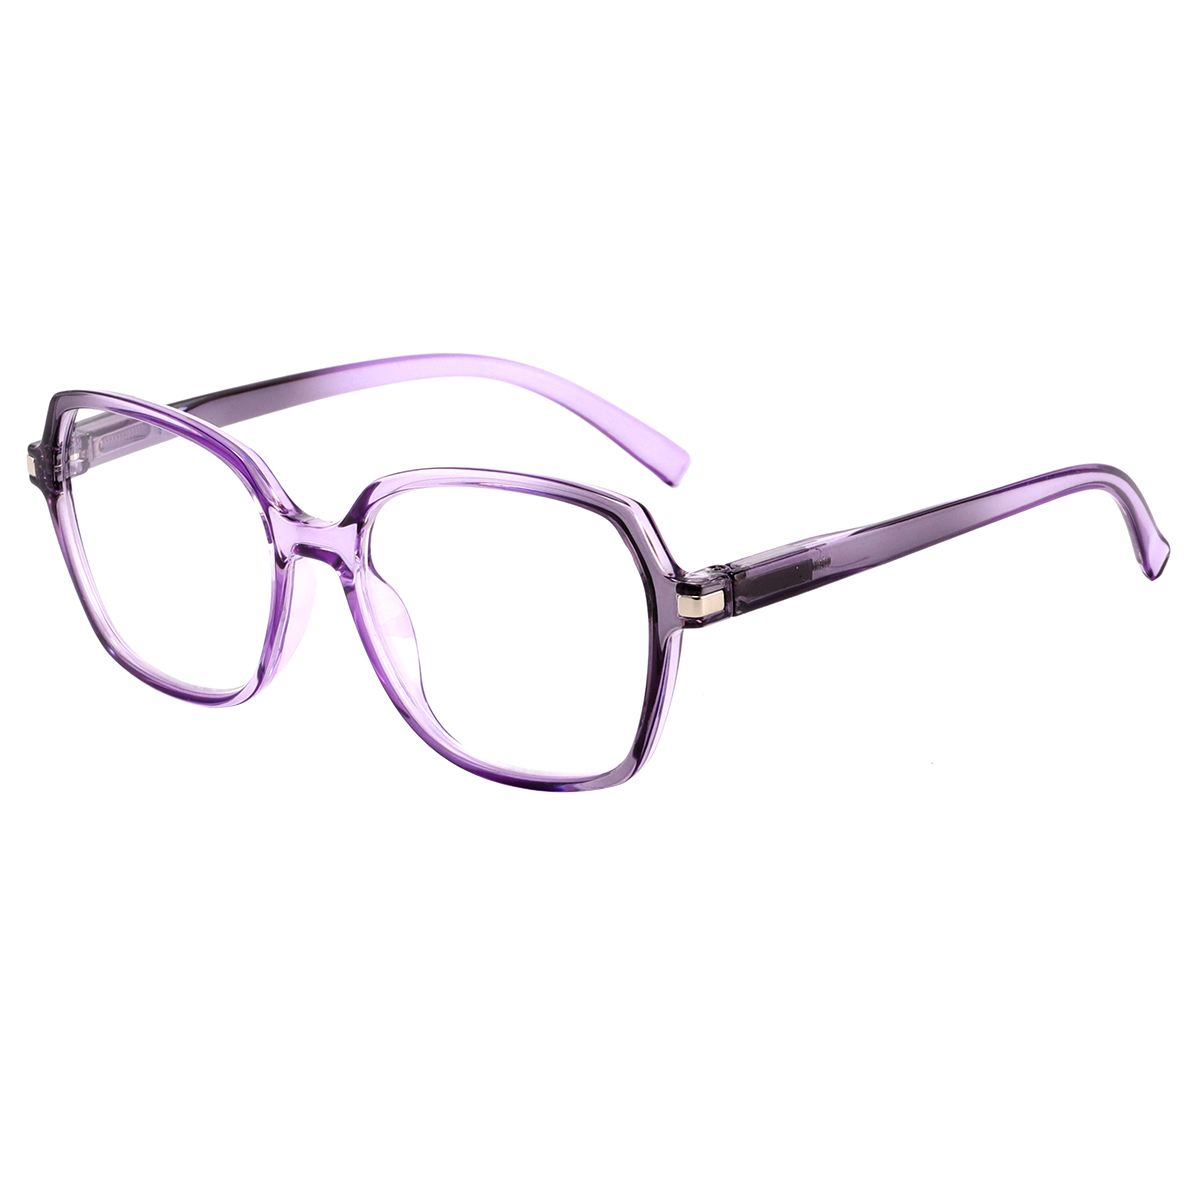 Scallabis - Square Purple Reading Glasses for Men & Women